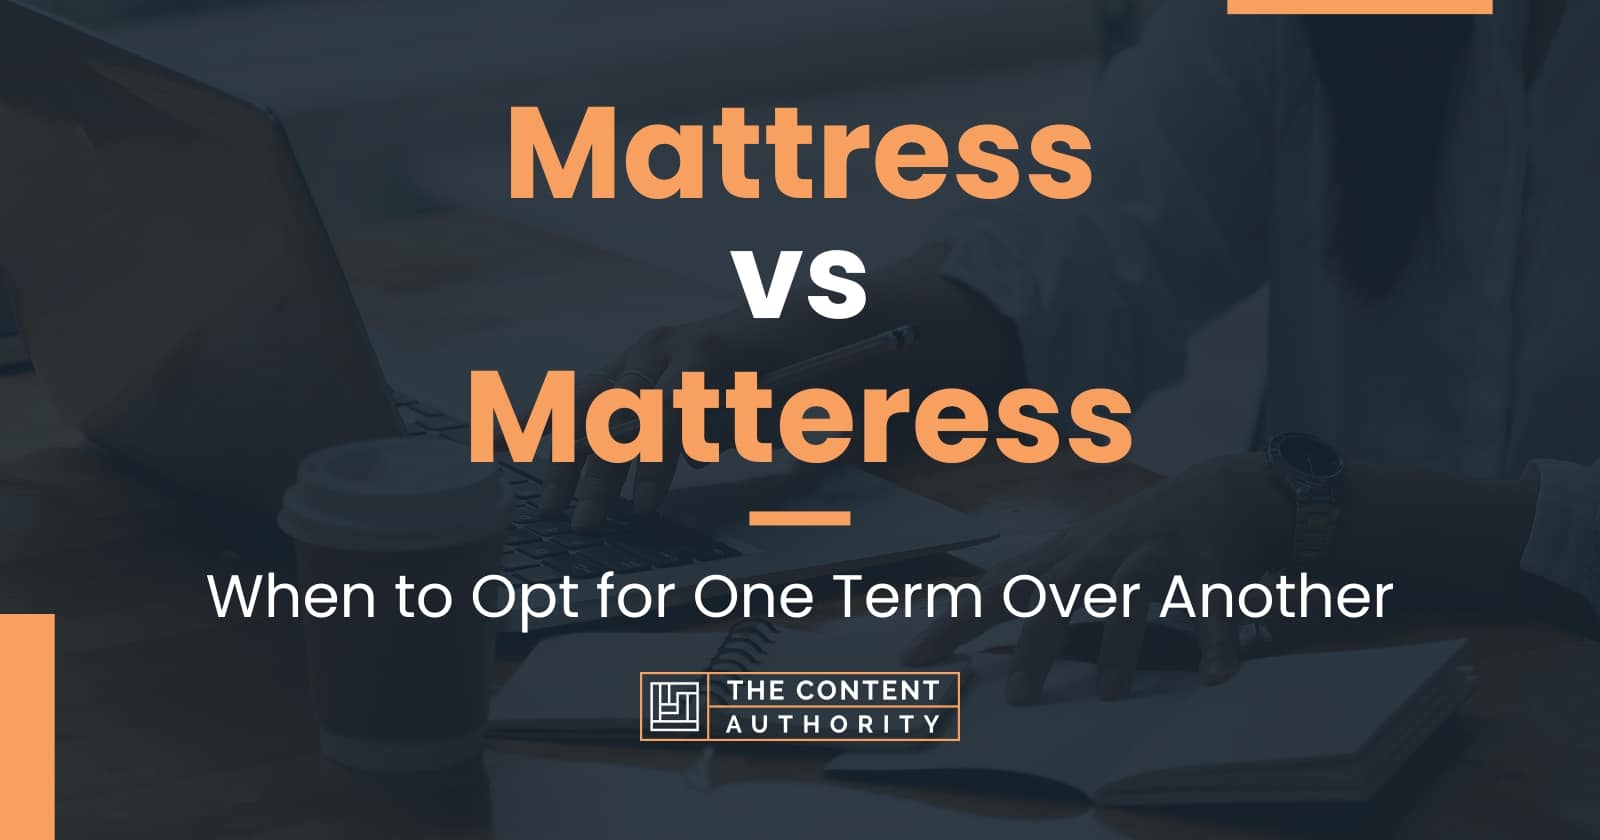 orginal mattress factory vs matteress firm